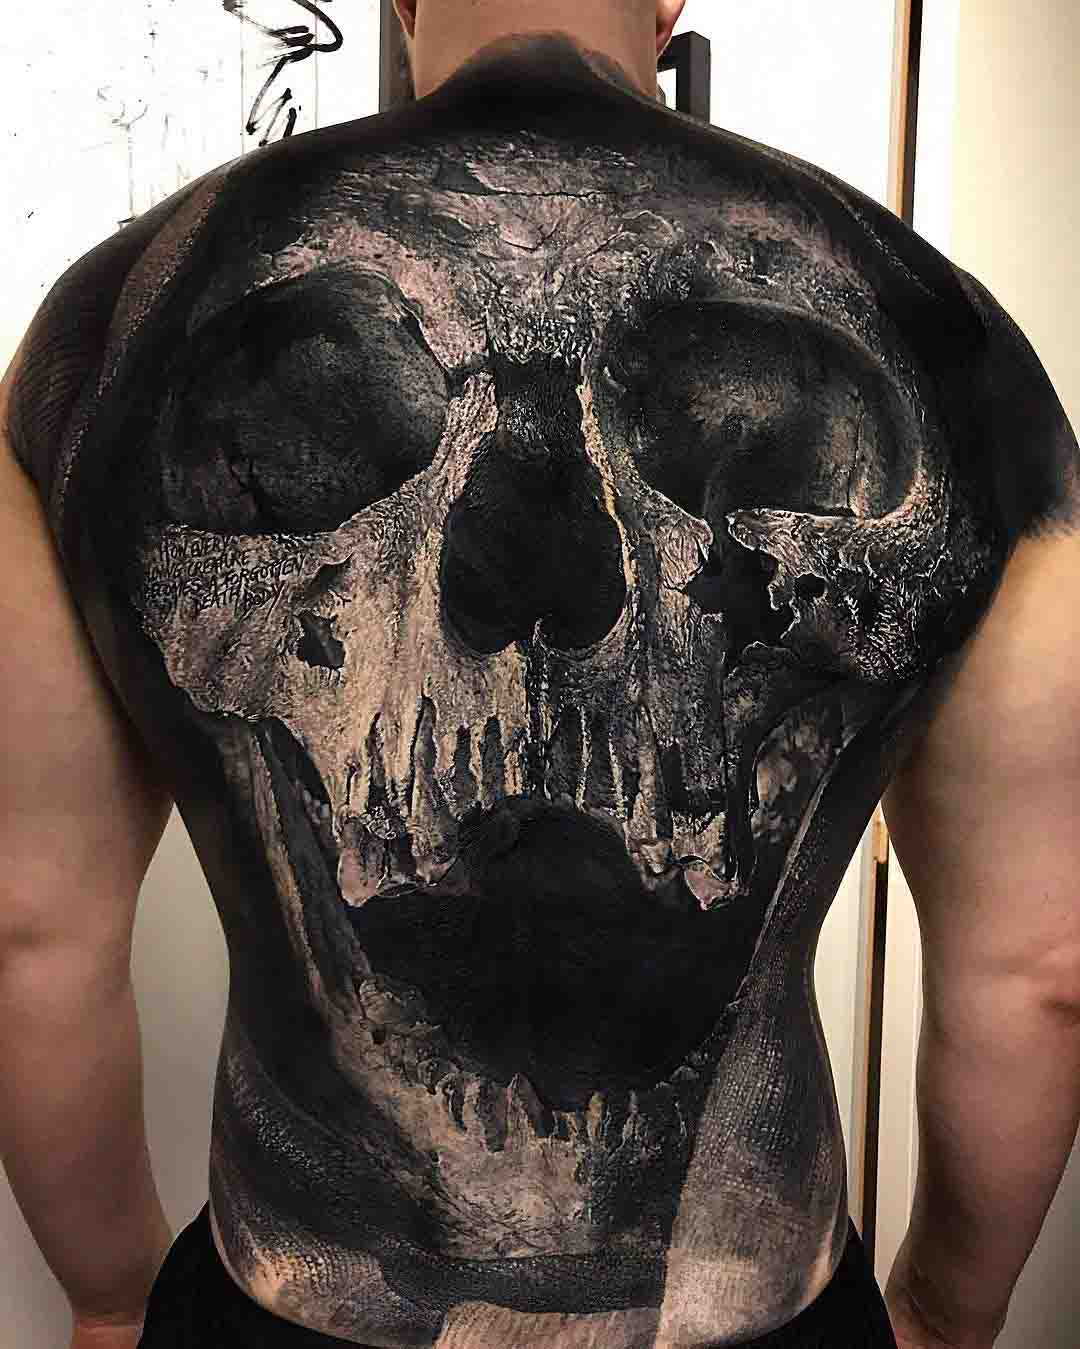 full back tattoo of skull